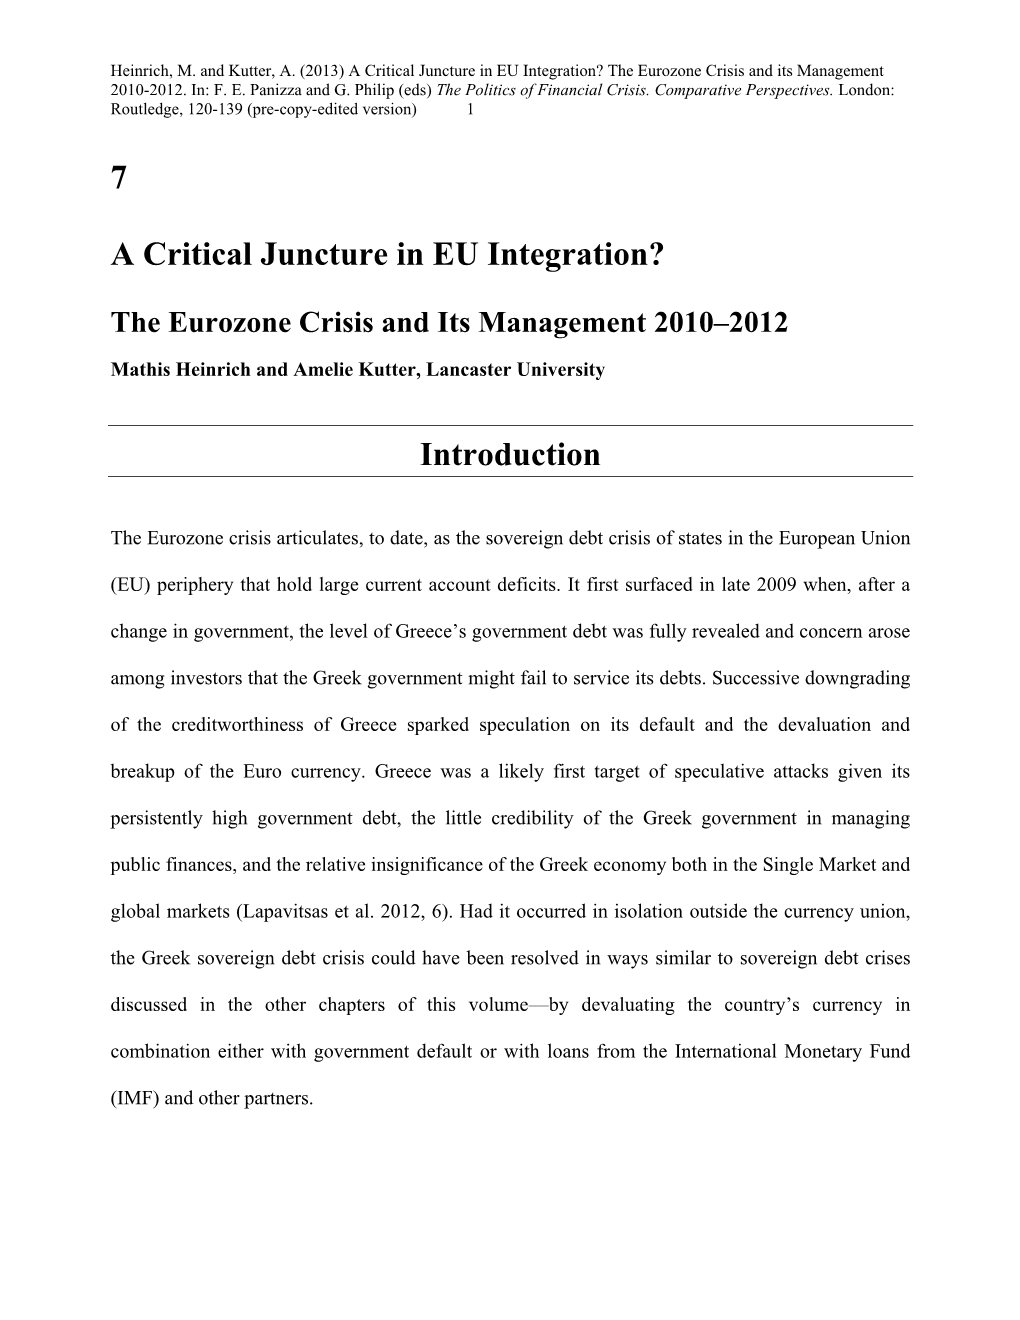 7 a Critical Juncture in EU Integration?